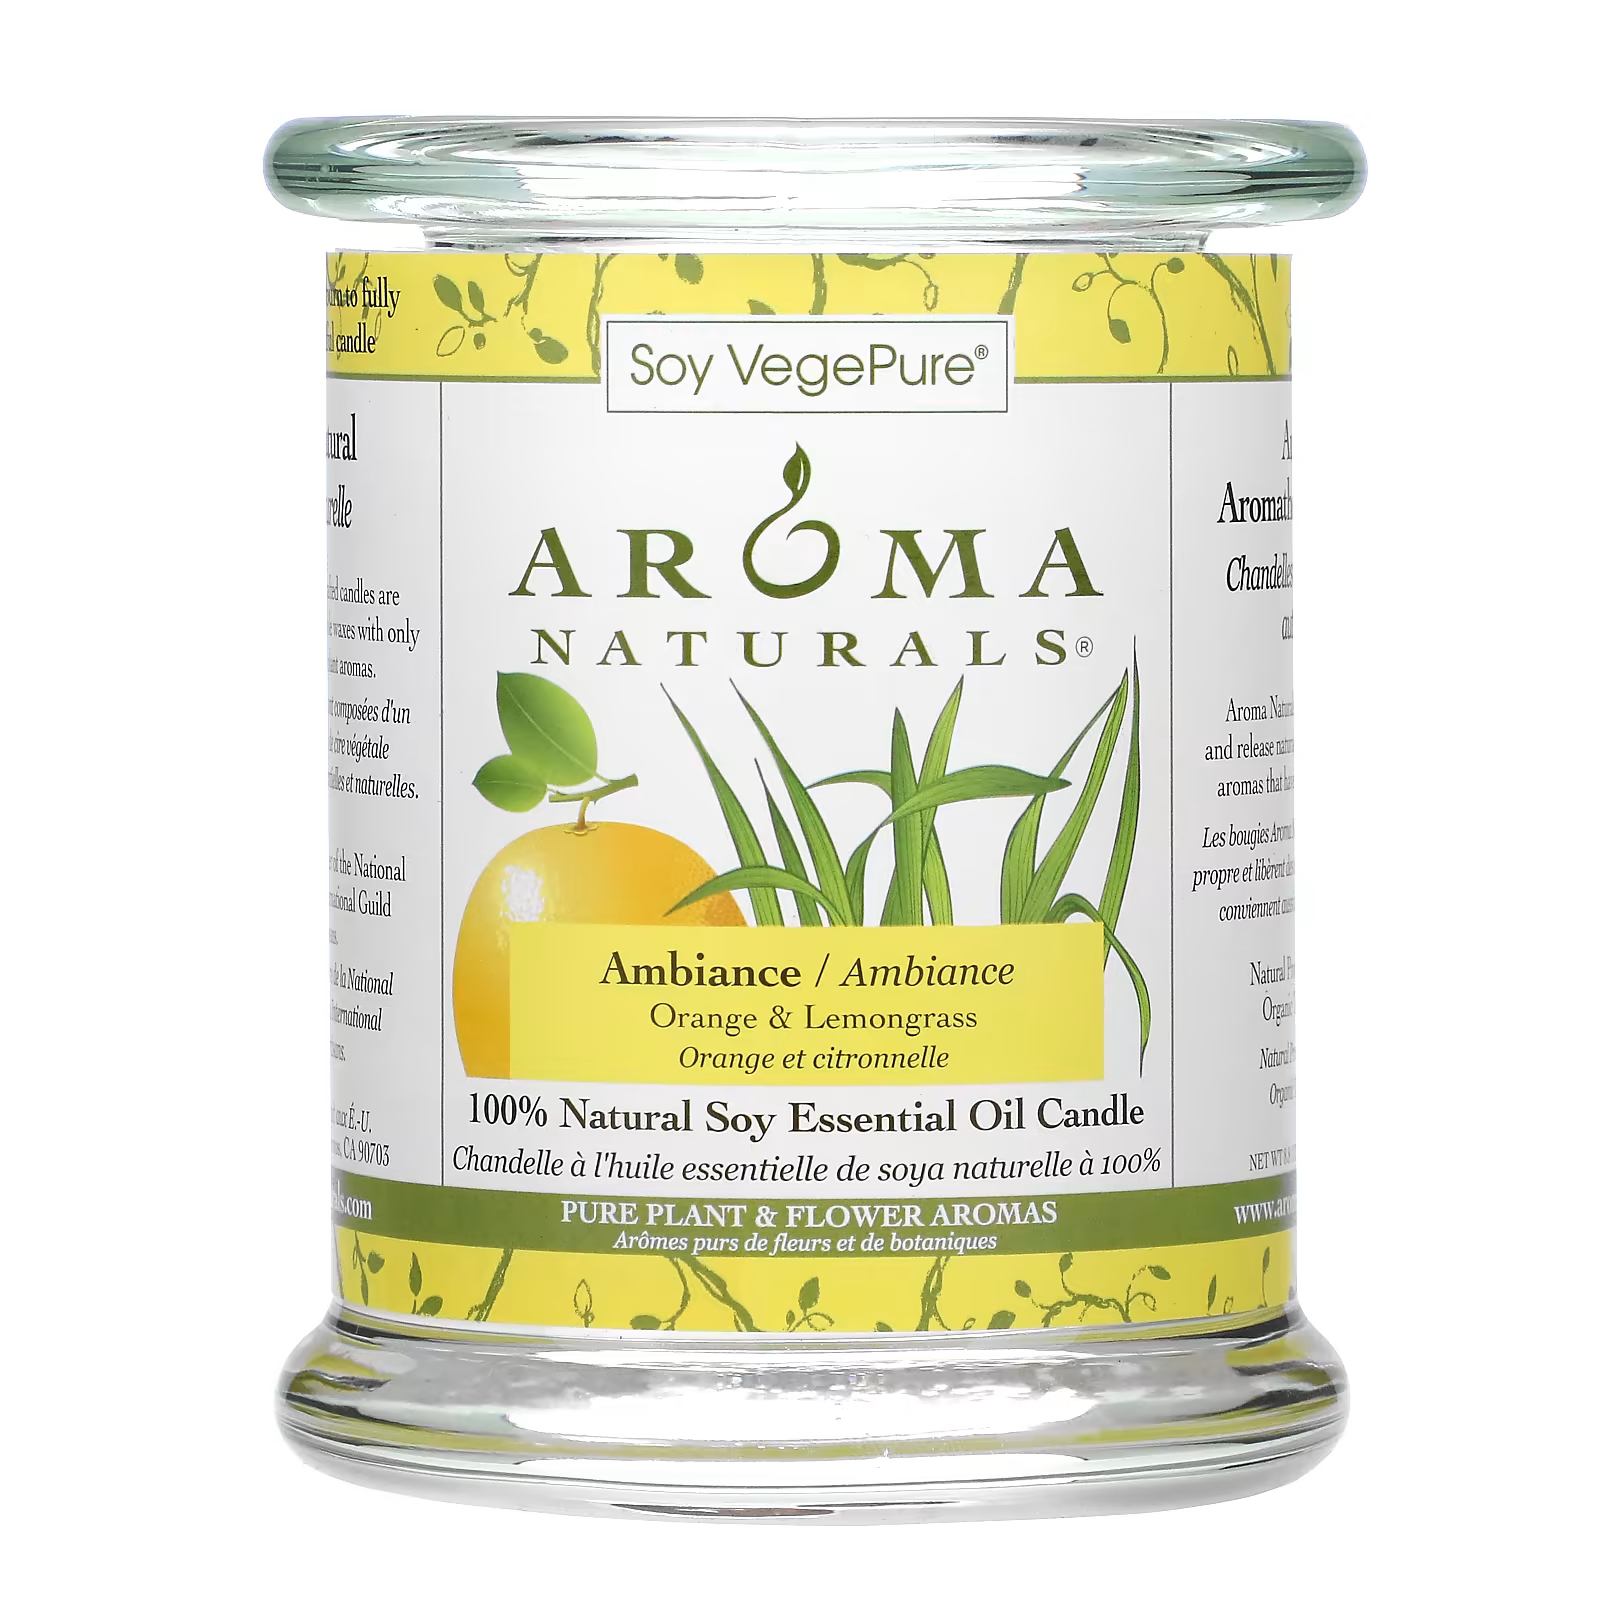 Soy VegePure 100% натуральное соевое эфирное масло, свеча Ambiance Orange & Lemongrass, 8,8 унции (260 г) Aroma Naturals цена и фото